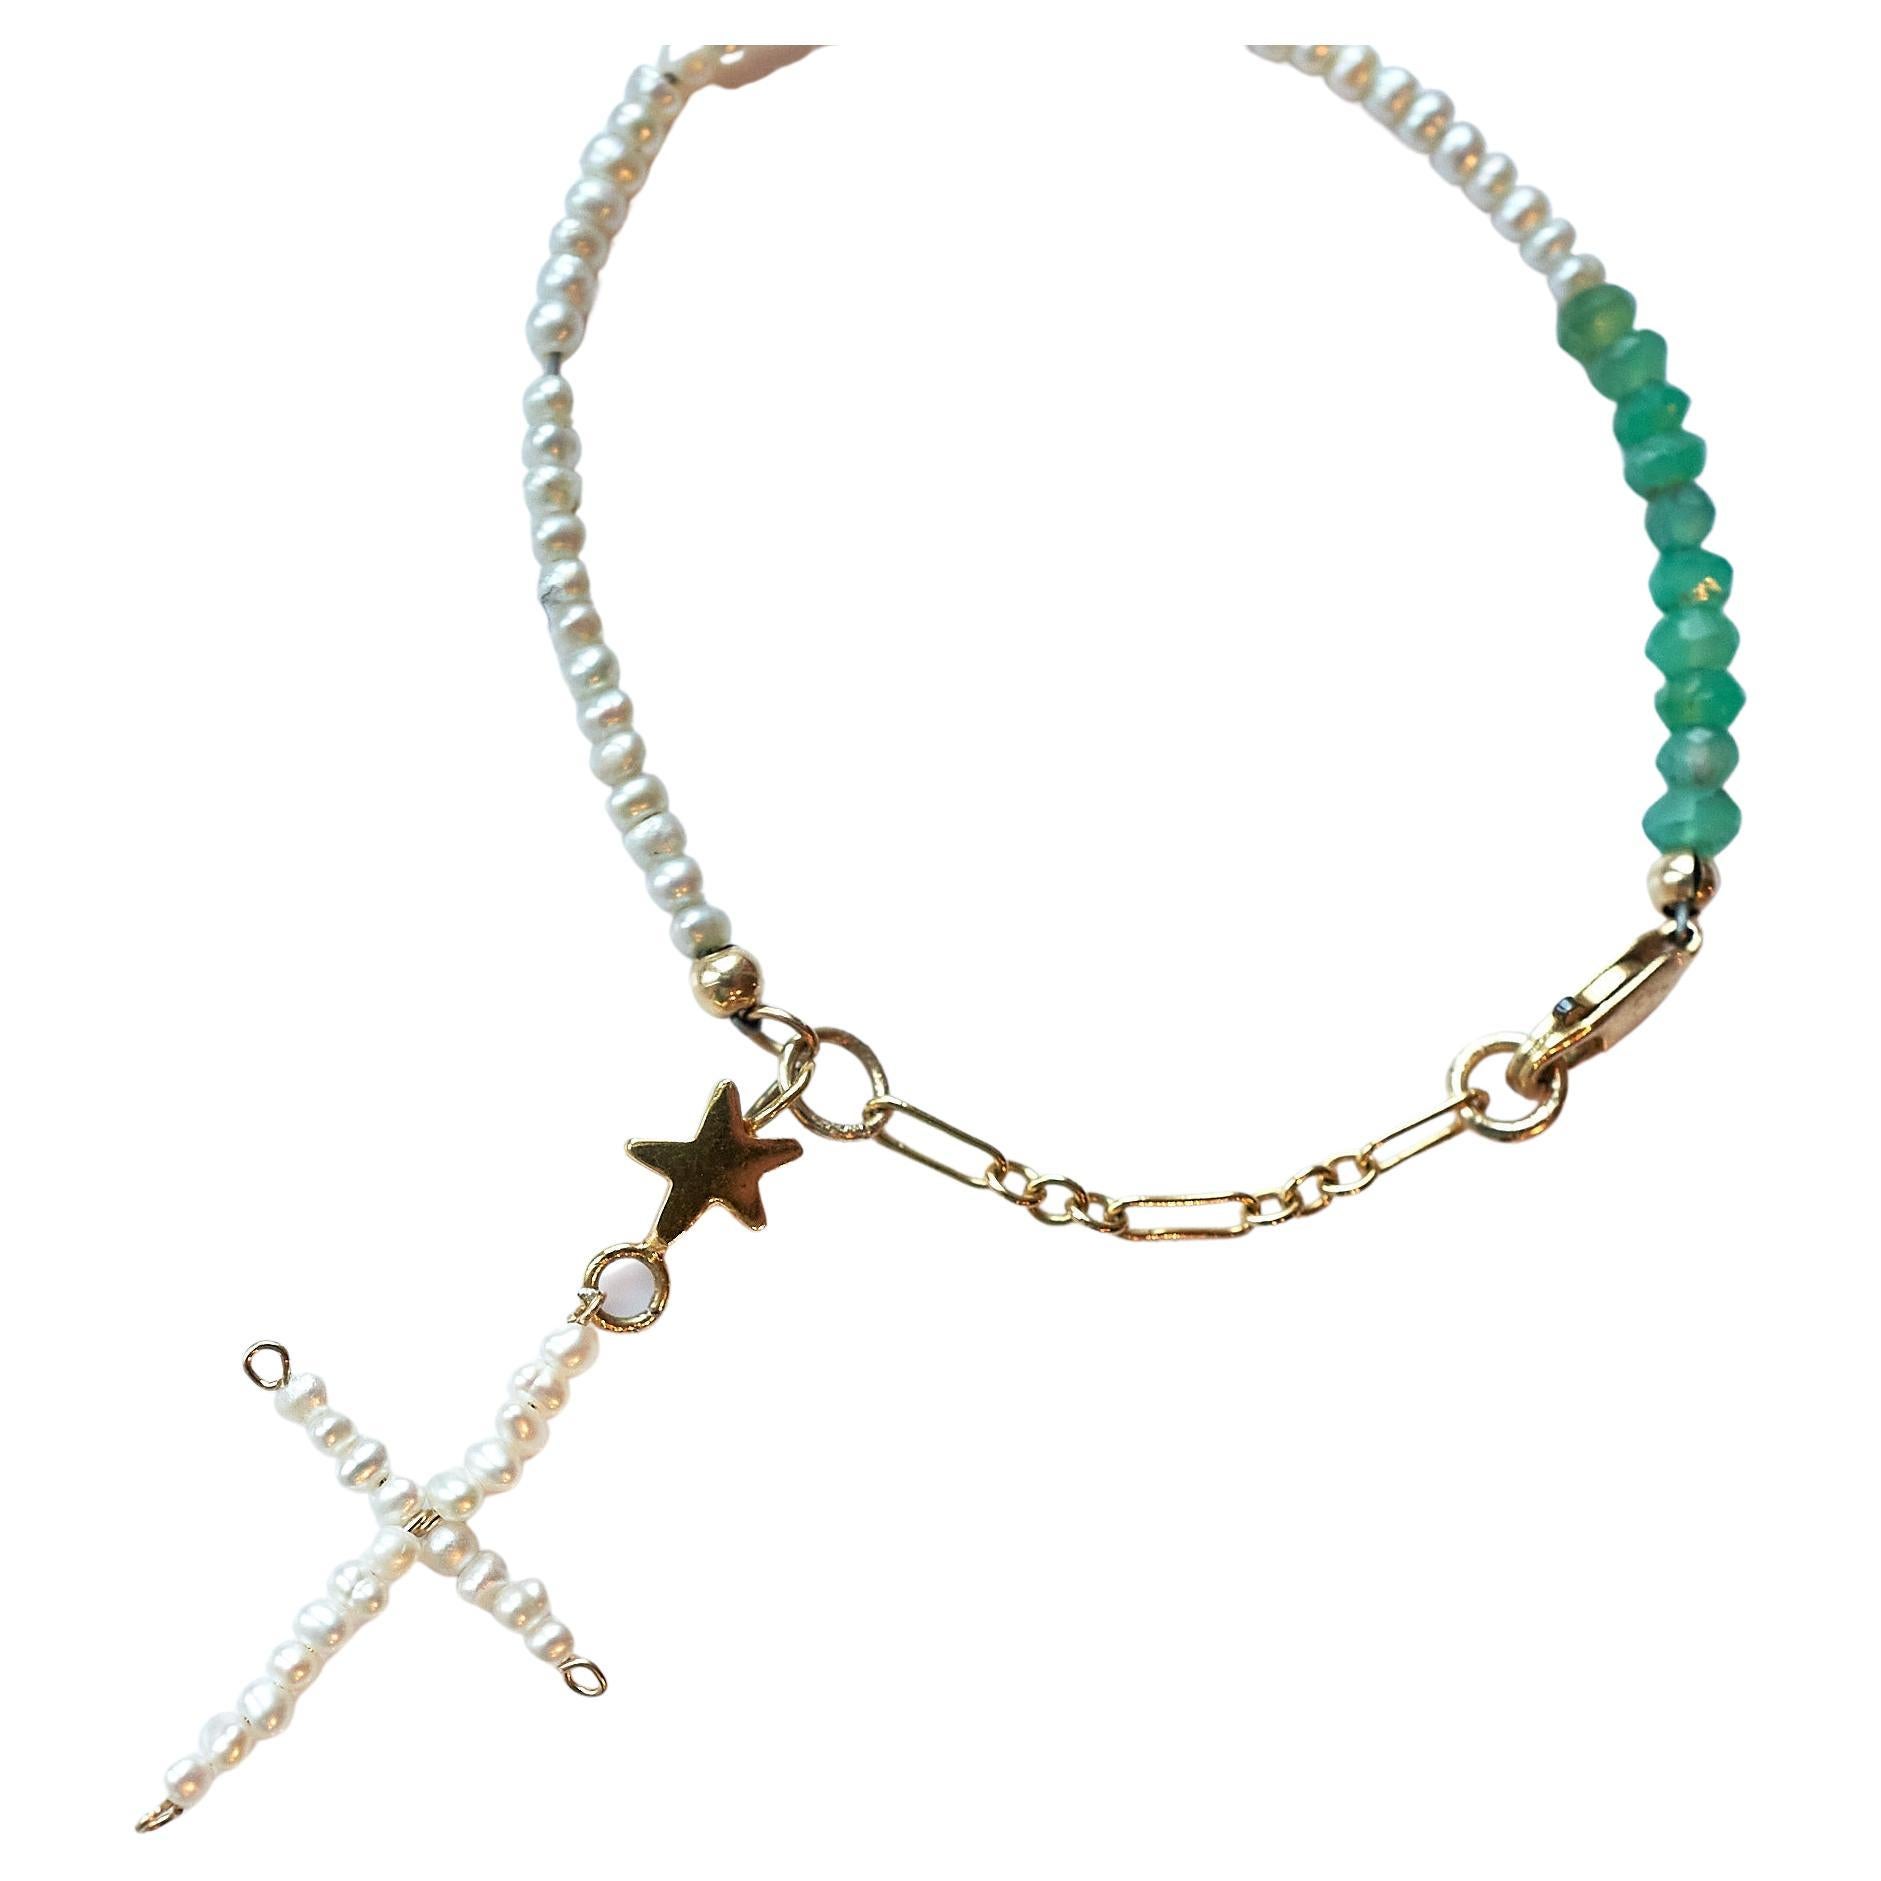 Pearl  Cross White Pearl Chain Bracelet Green Chrysoprase  
Designer J Dauphin

